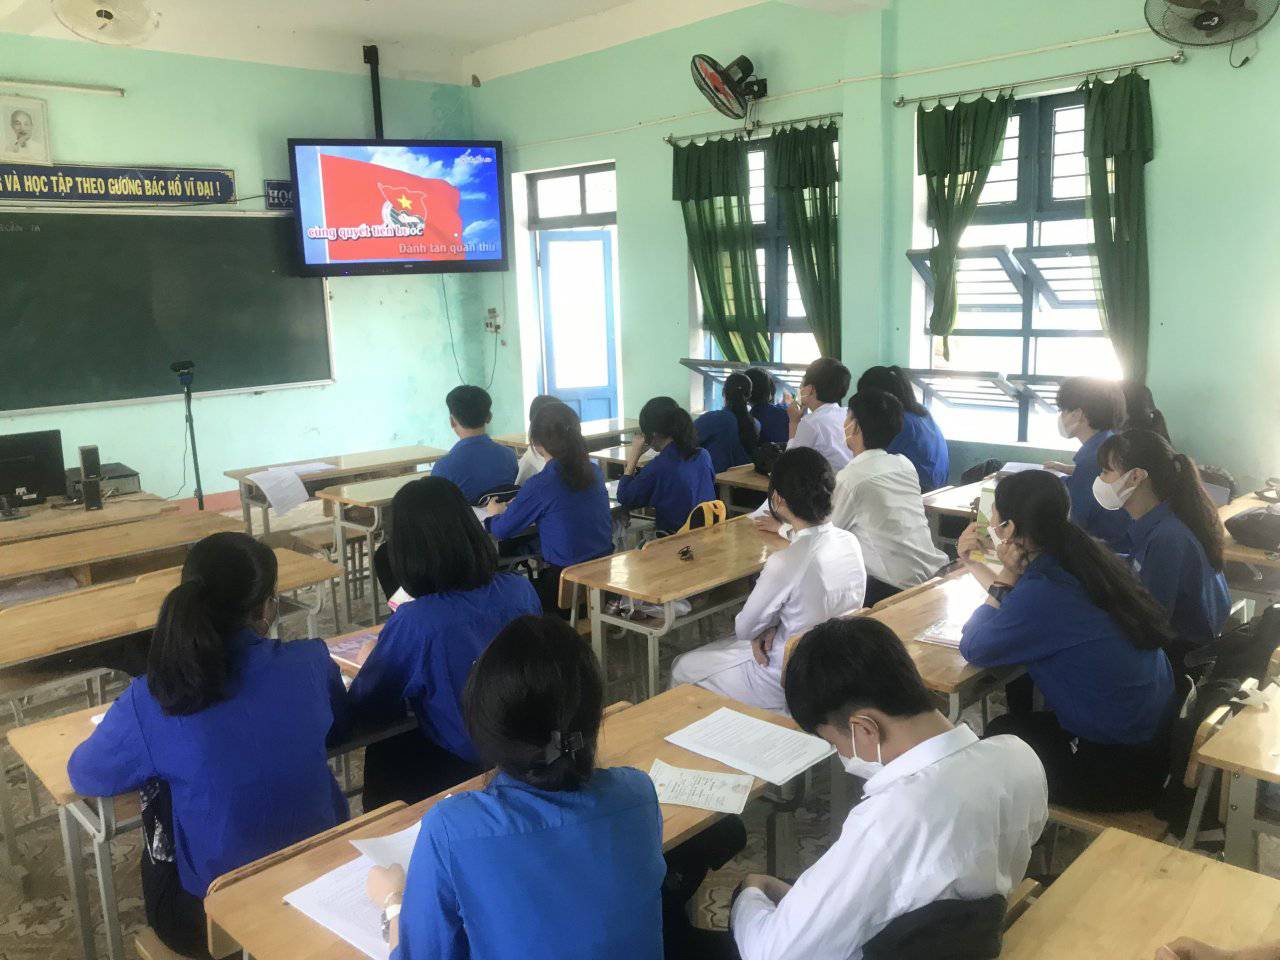 CLB lý luận trẻ trường THPT Nguyễn Khuyến sinh hoạt tháng 3